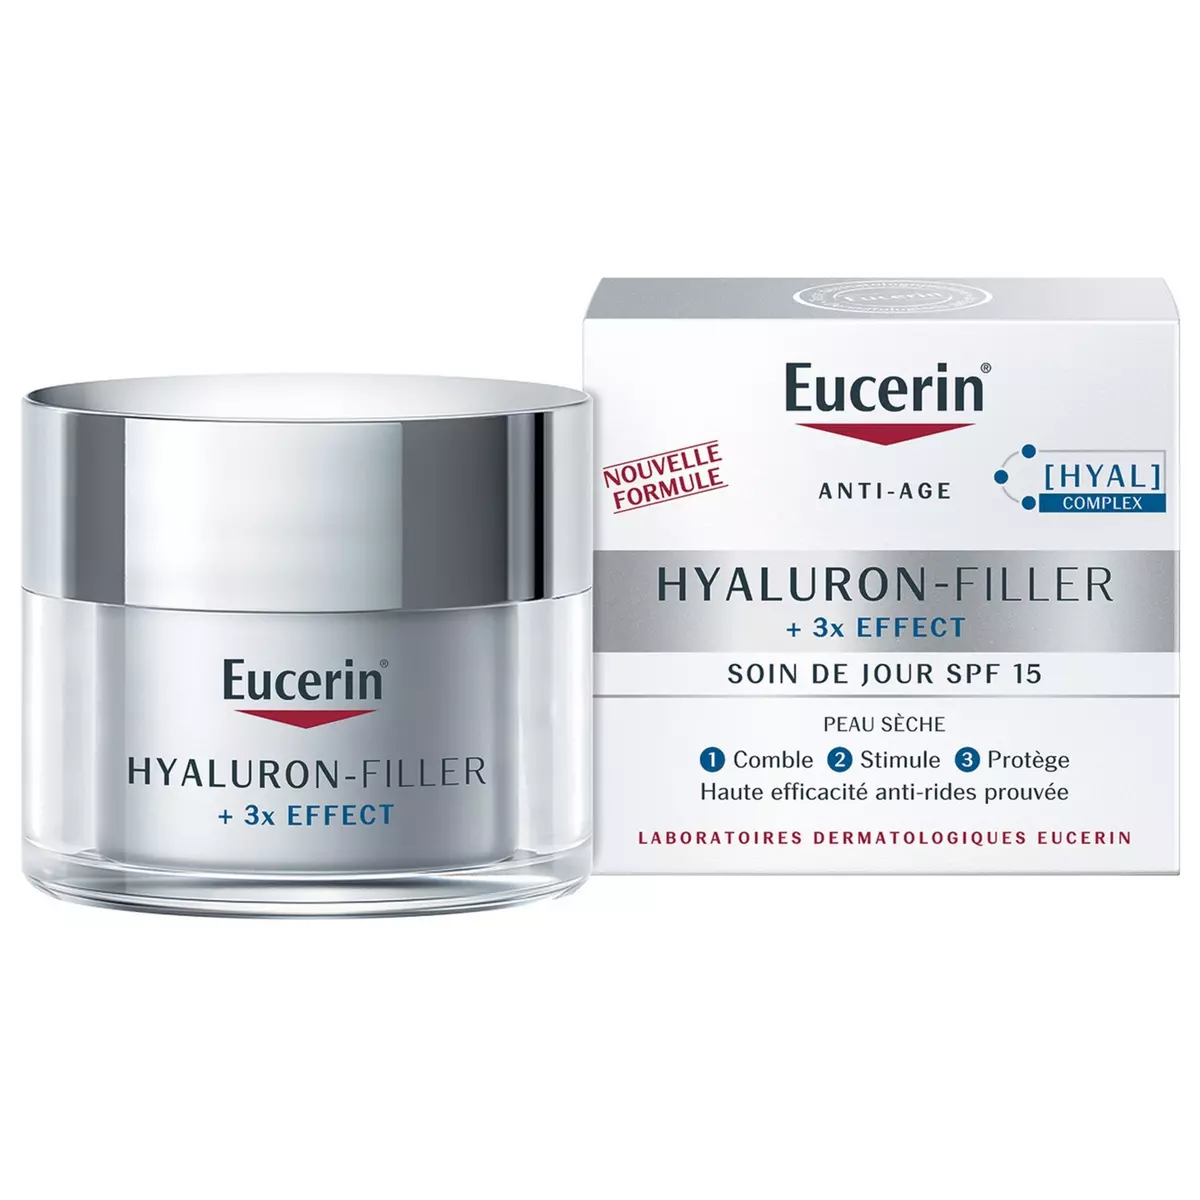 EUCERIN Hyaluron-filler soin de jour 3x effect SPF15 50ml